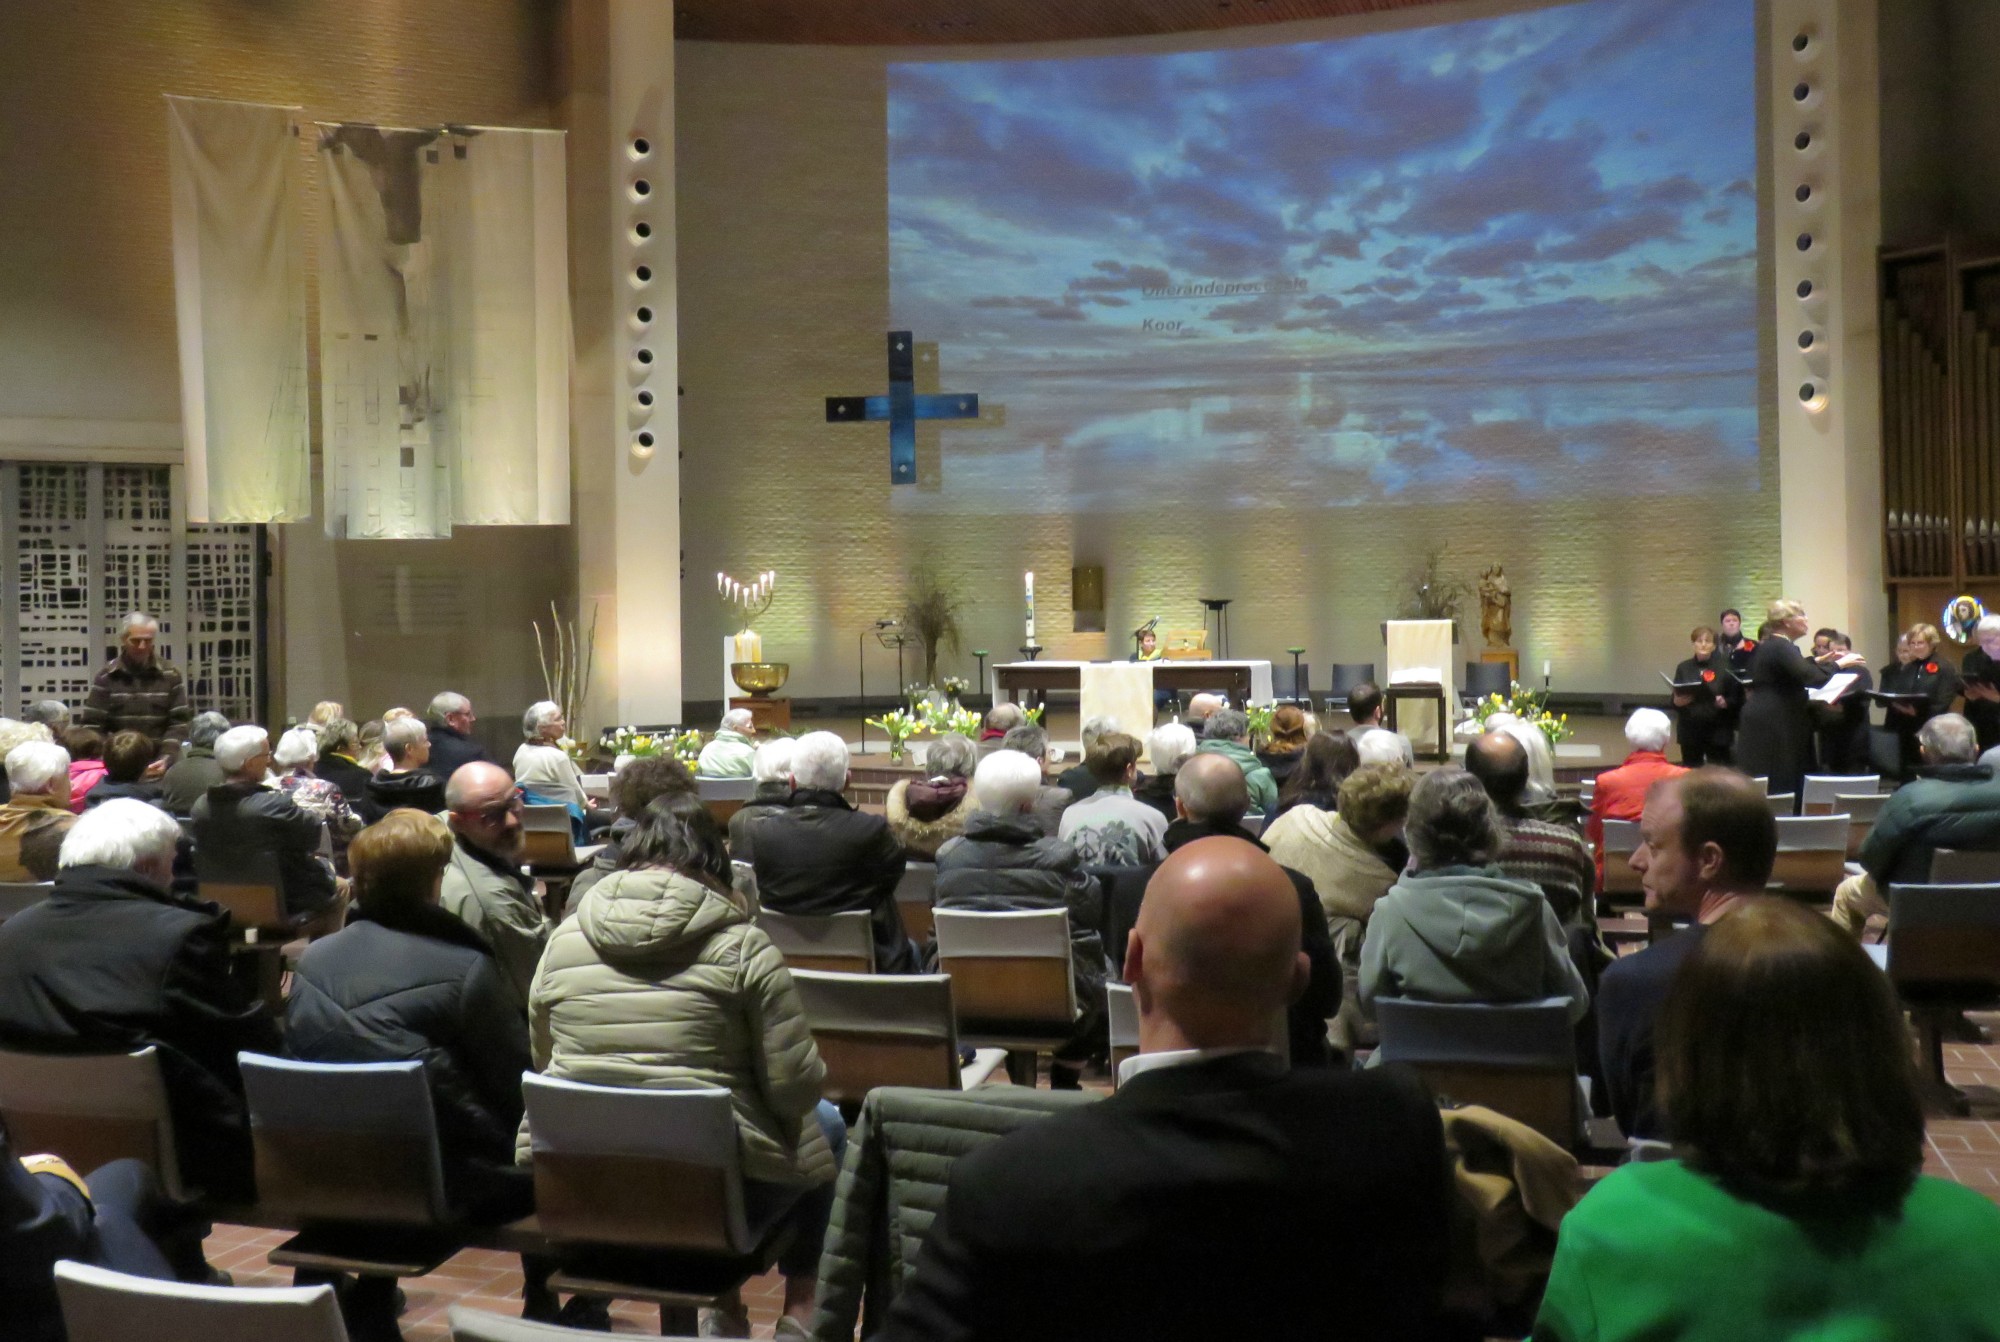 Paaswake | Voorgegaan door de 6 gebedsleiders | Sint-Anna-ten-Drieënparochie, Antwerpen Linkeroever